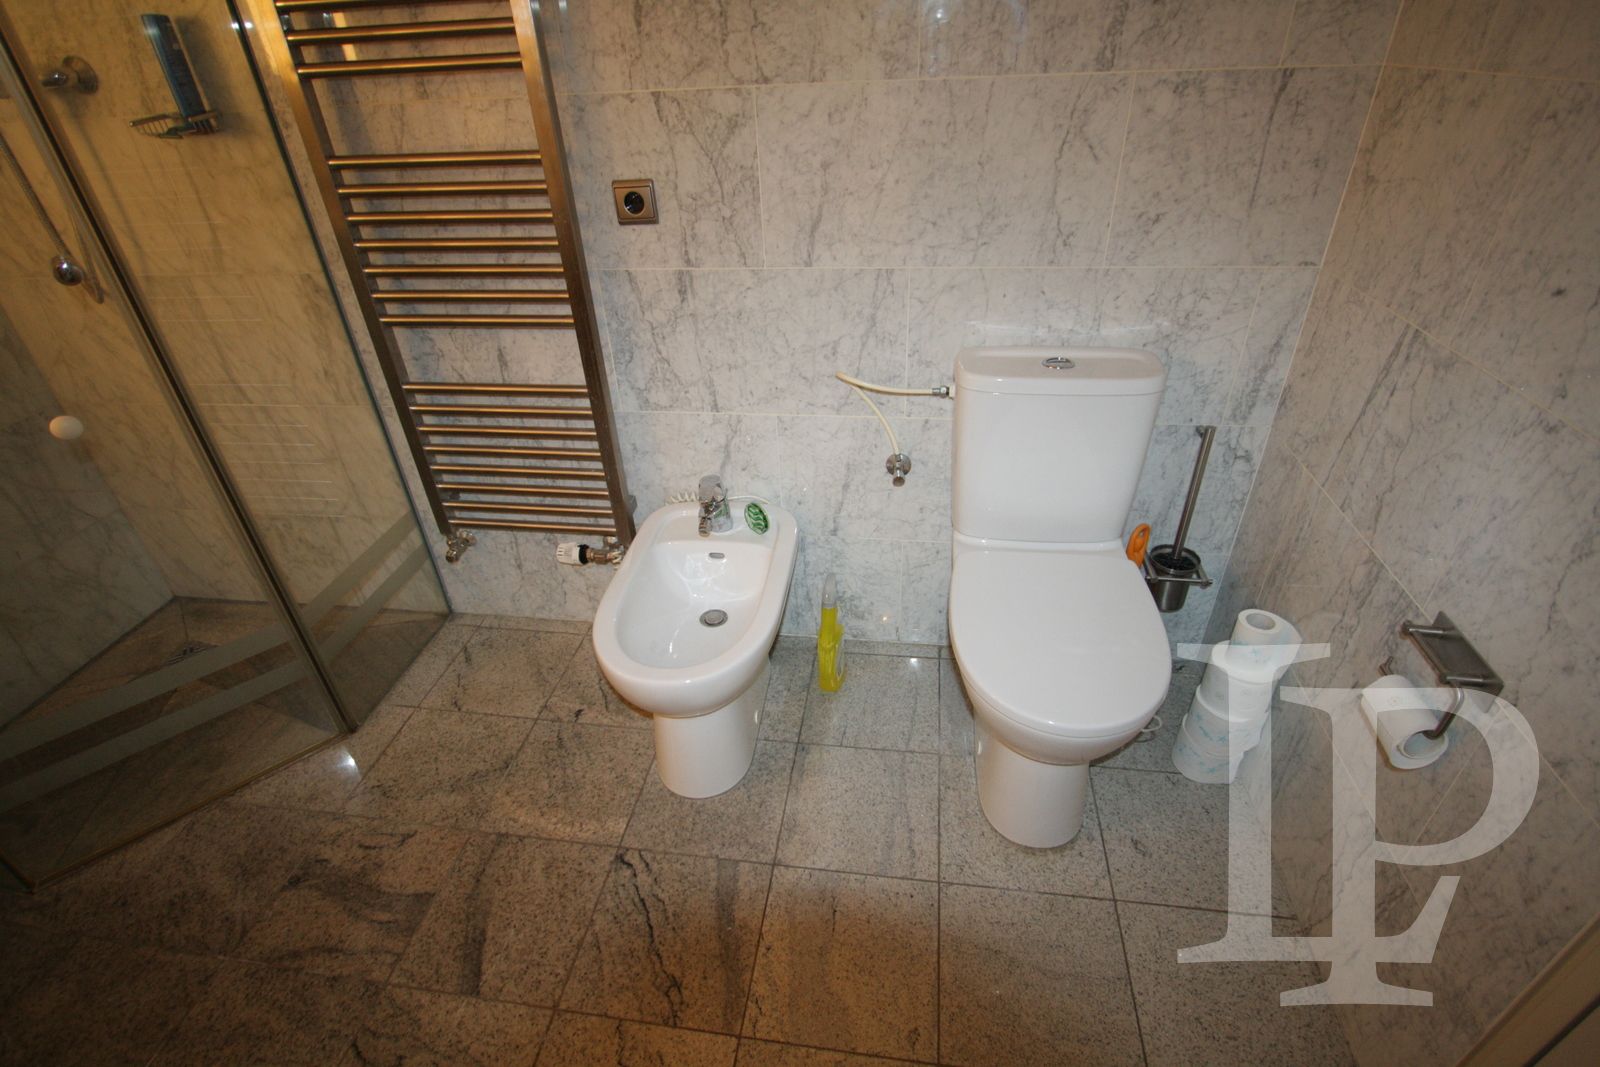 Luxusní apartmán s dvěma koupelnami a terasou v centru Prahy 1, 160 m2